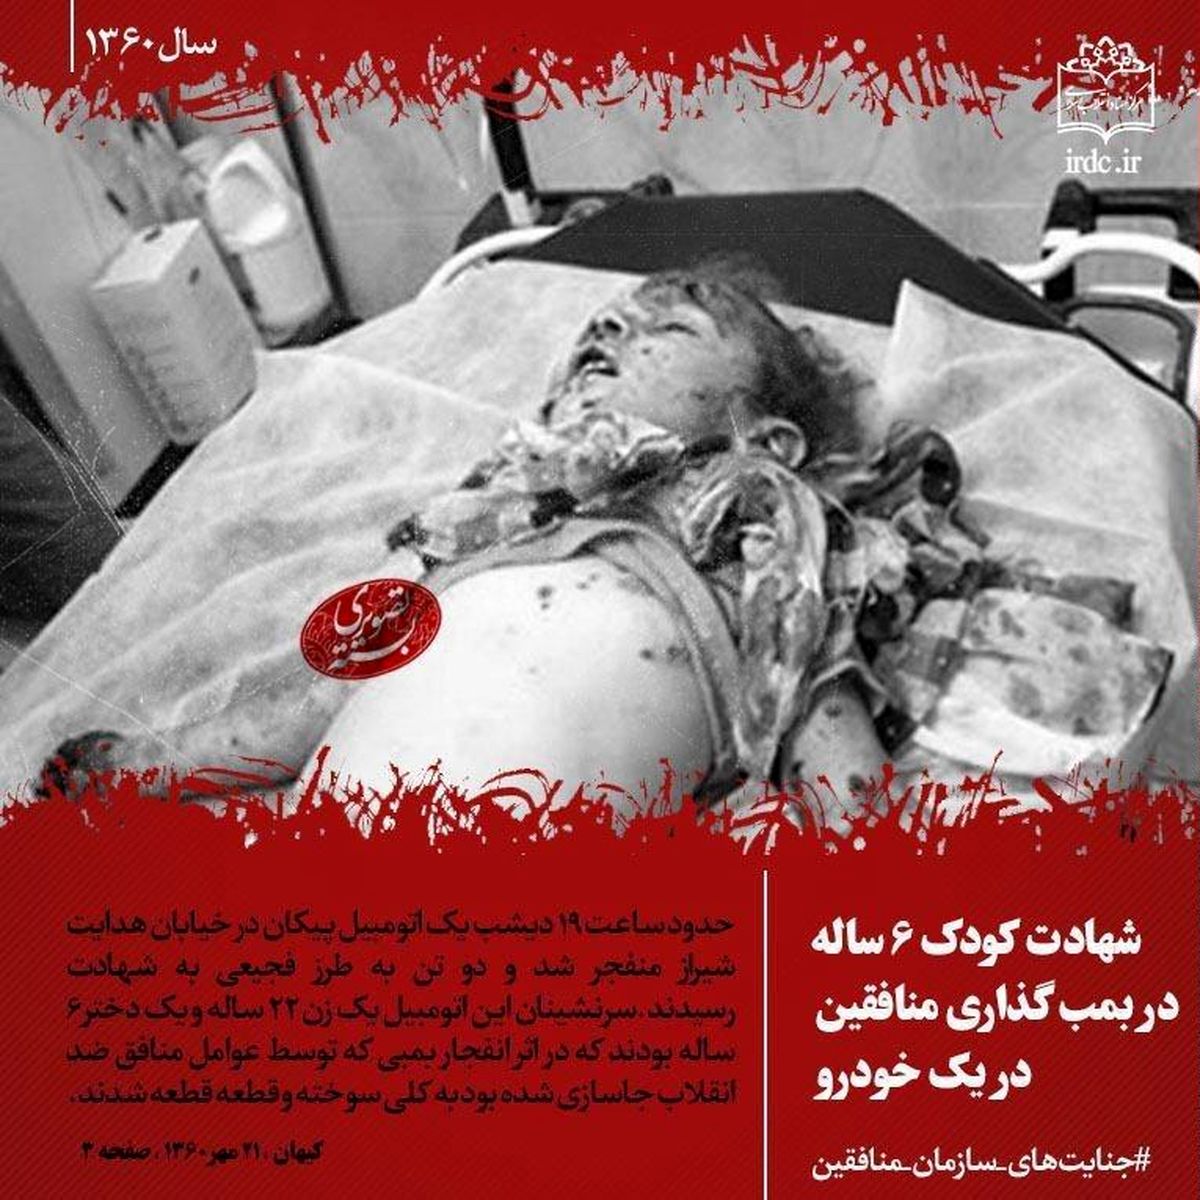 بسته تصویری "جنایت‌های سازمان منافقین" در صفحه اینستاگرام مرکز اسناد انقلاب اسلامی